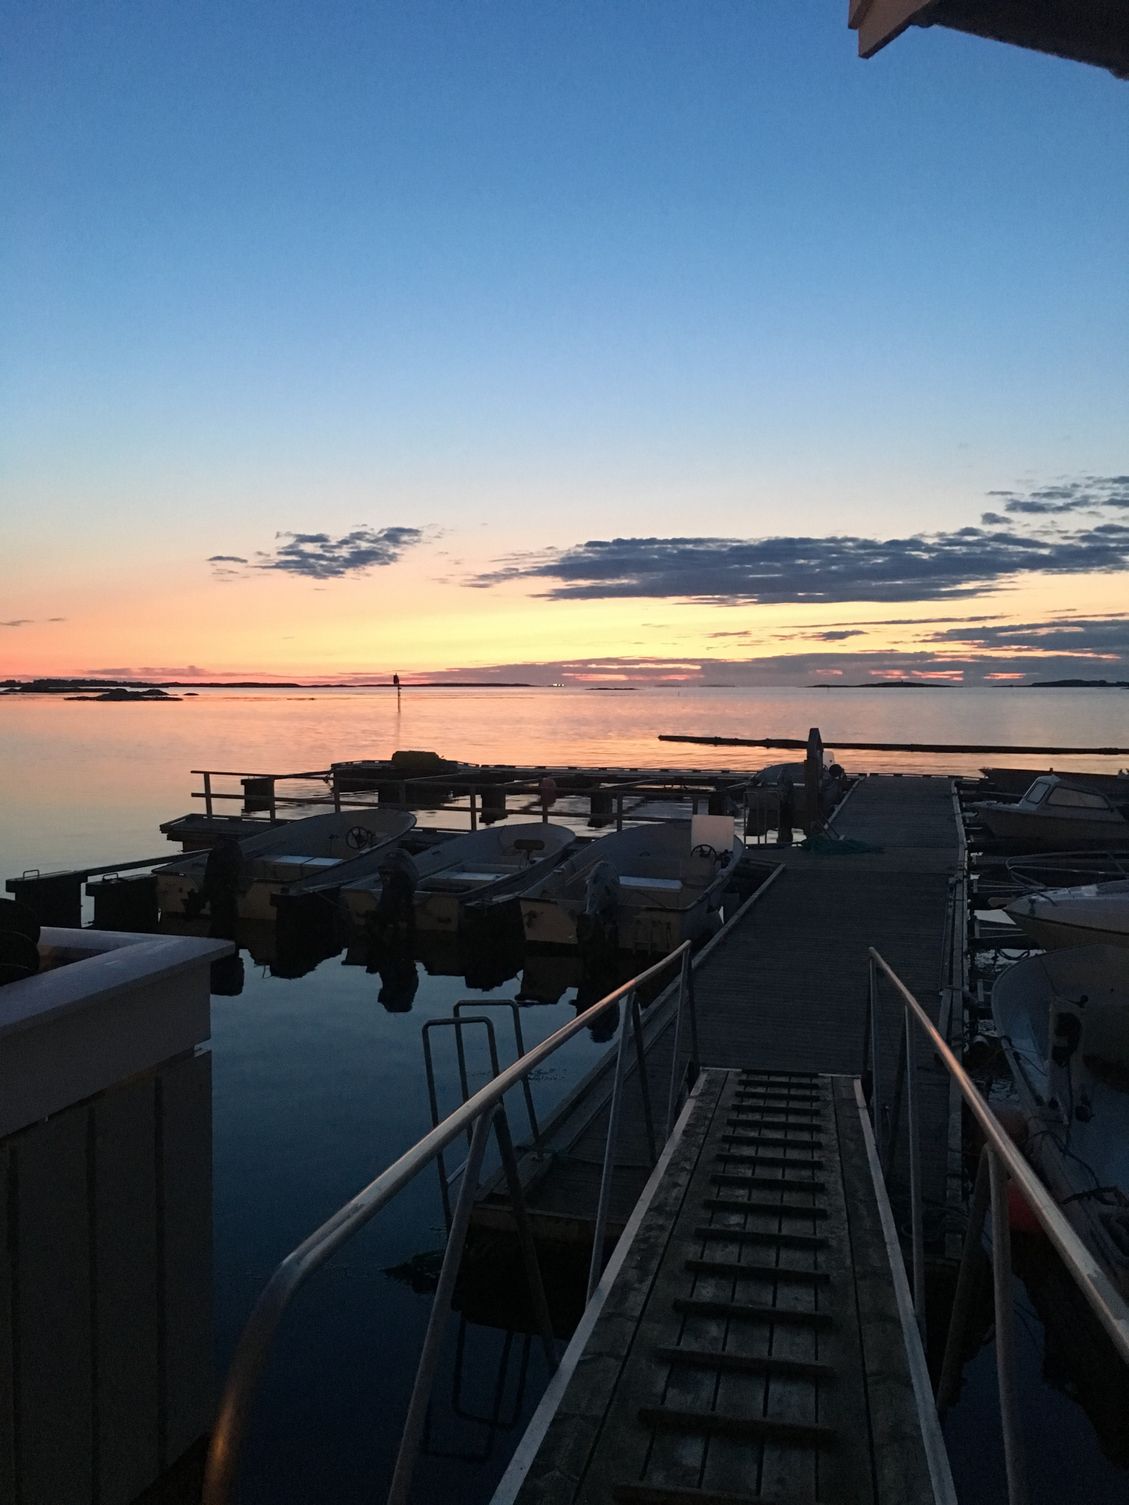 Nydelig solnedgang tatt fra Hopen Brygge i september mot flytebryggen